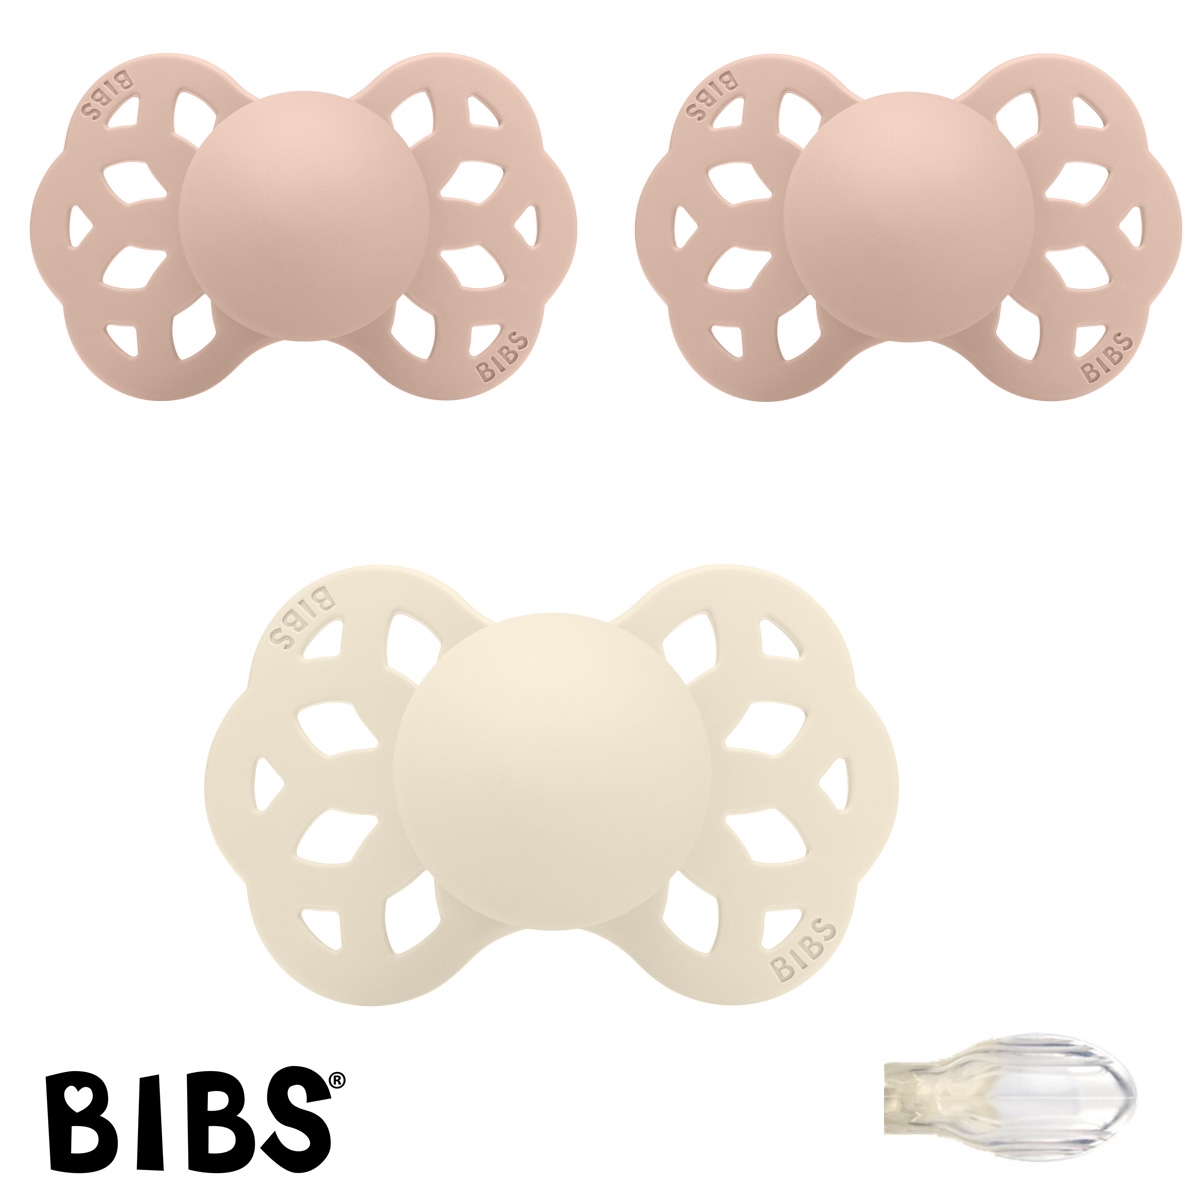 BIBS Infinty Sutter med navn str 1, 2 Blush, 1 Ivory, Symmetrisk Silikone, Pakke med 3 sutter